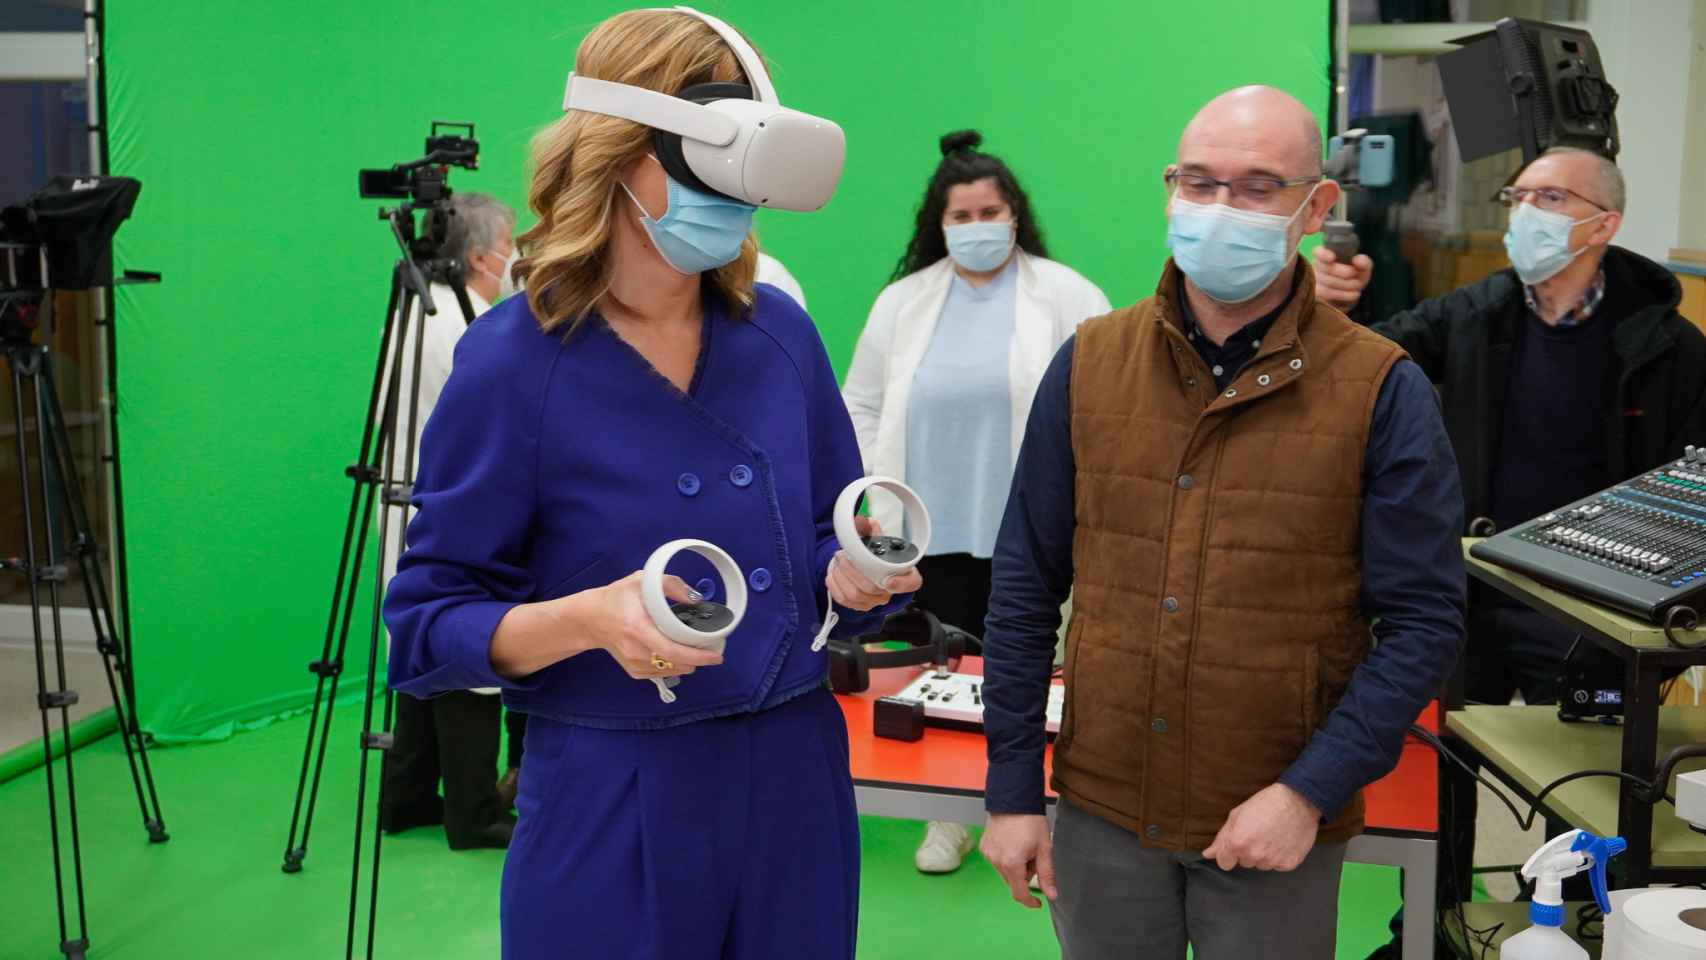 La ministra de Educación, Pilar Alegría, con unas gafas de realidad virtual este miércoles en Talavera de la Reina.